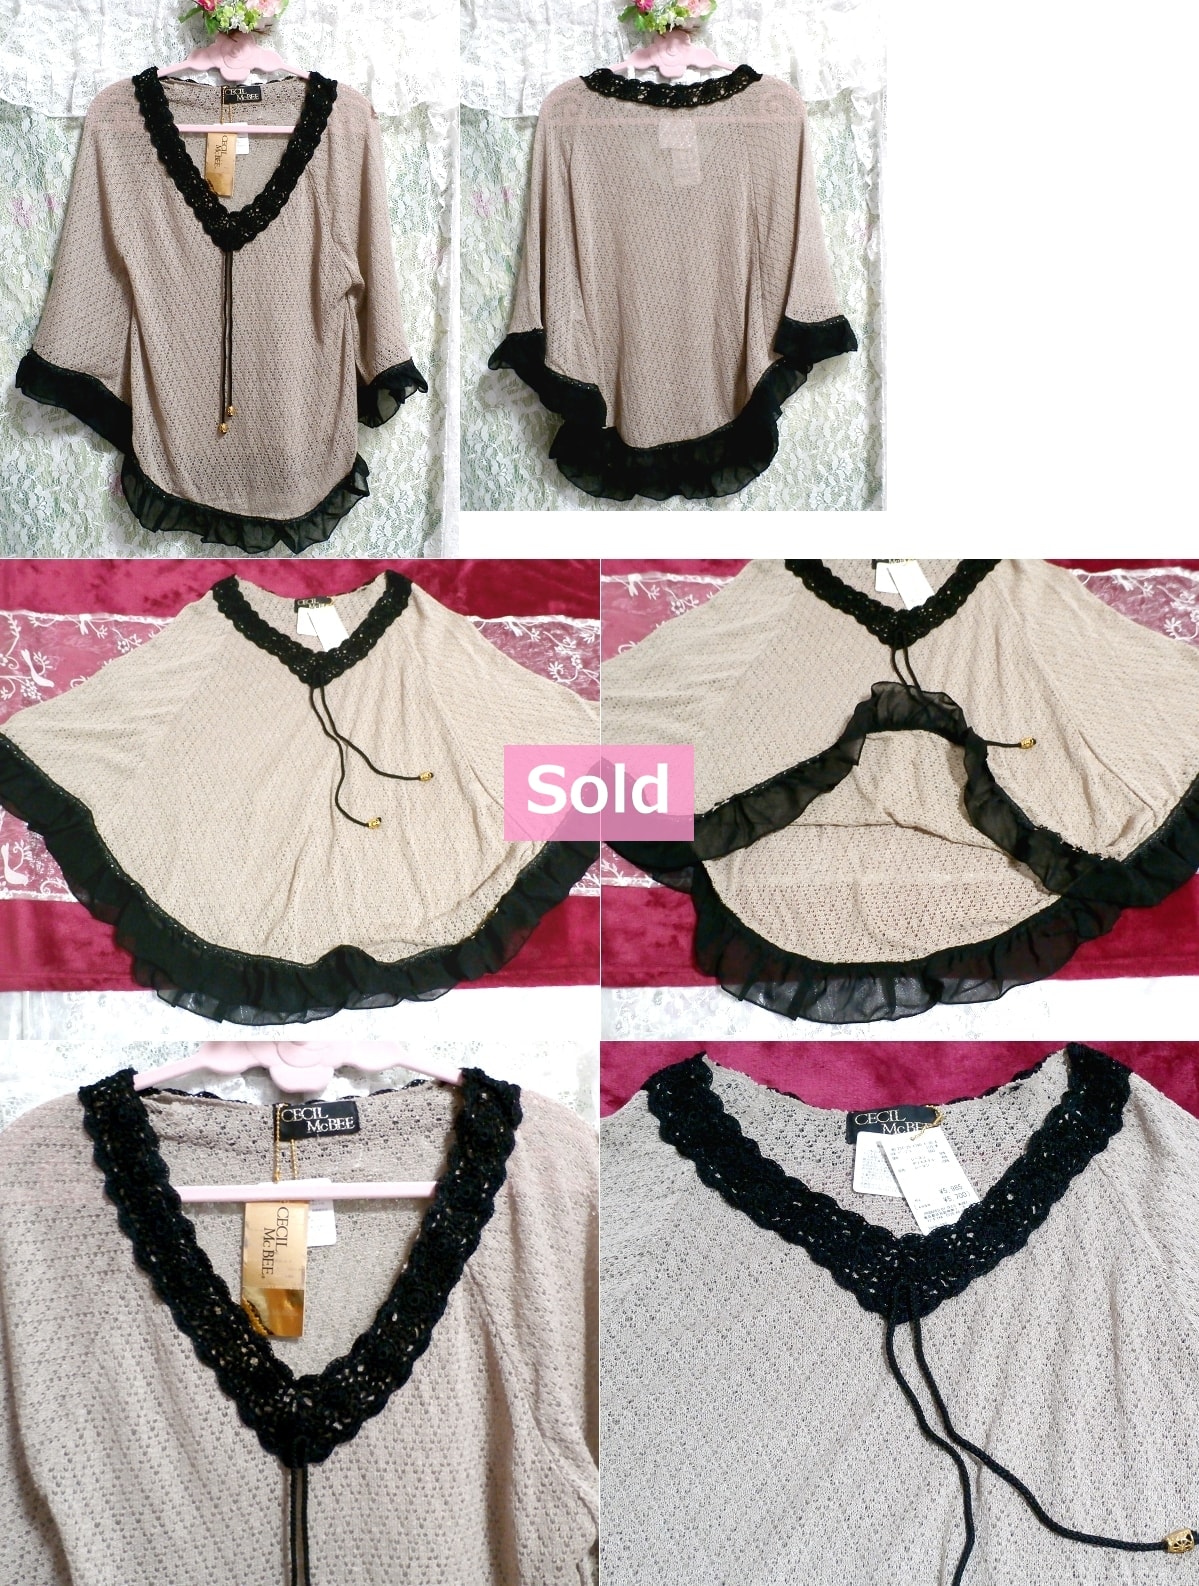 CECIL McBEE capa poncho de encaje negro color lino precio 5, 985 yenes etiquetados, blusas y rebecas para mujer